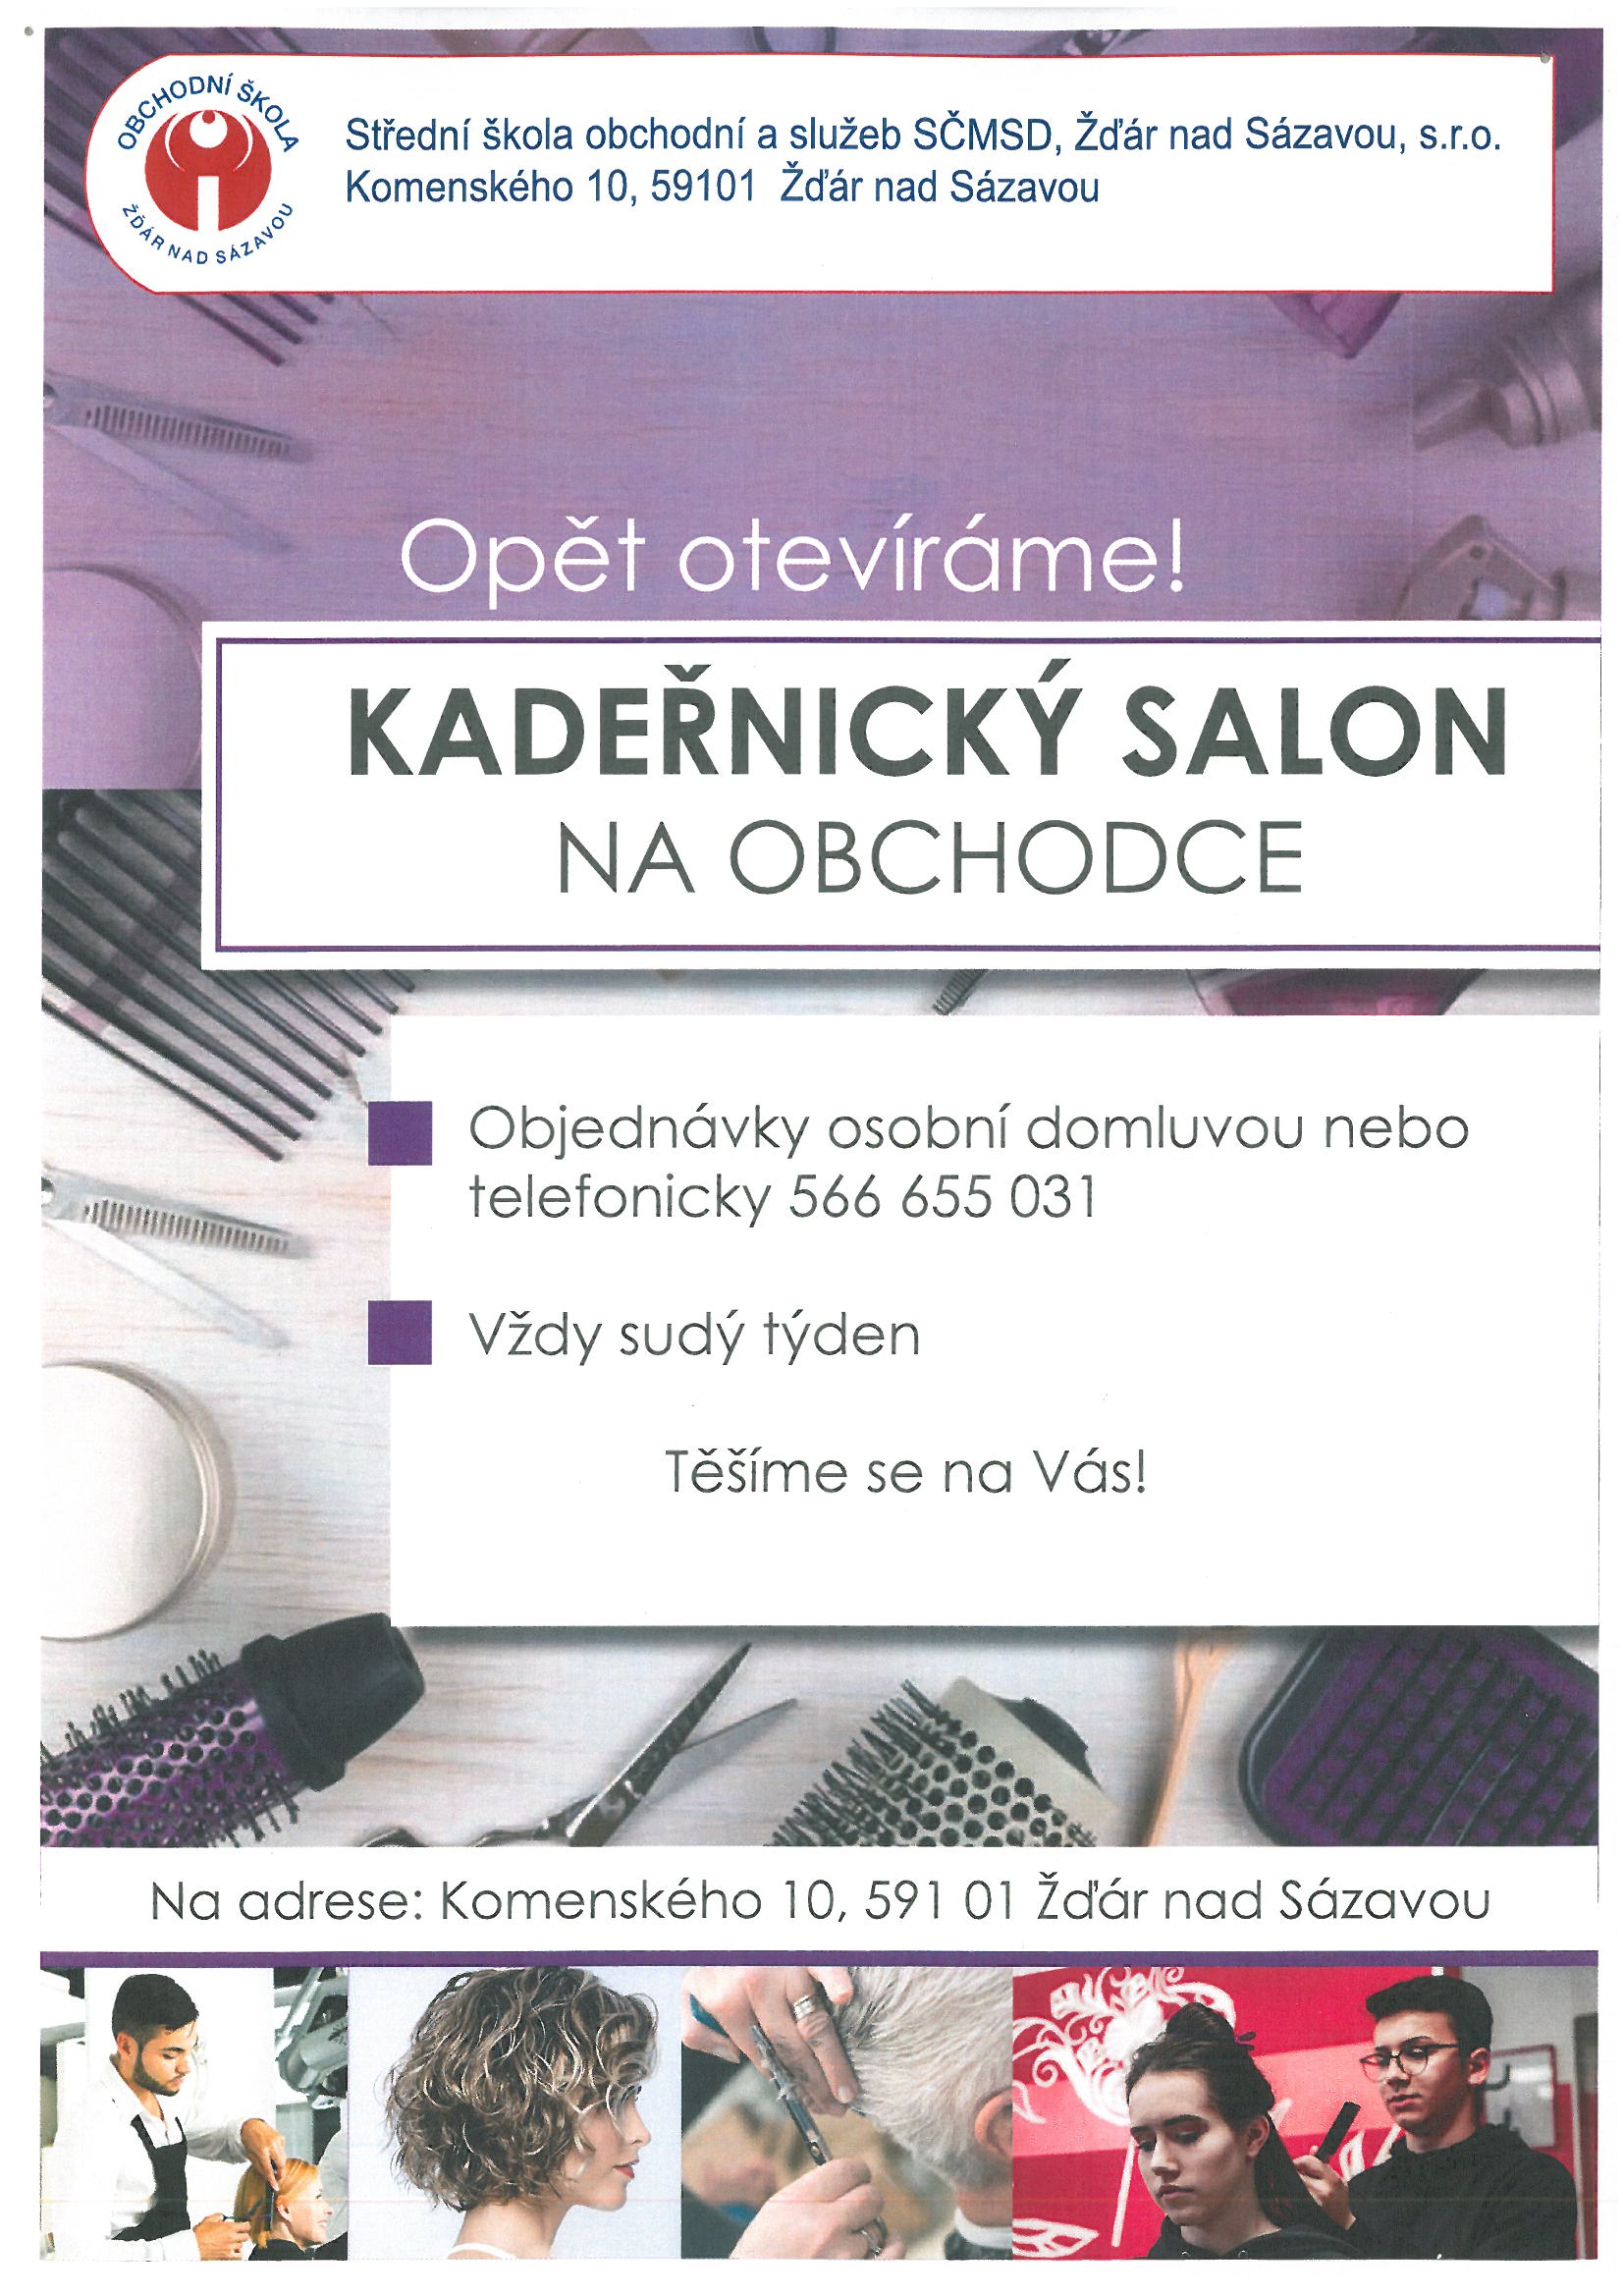 Kadernicky-salon